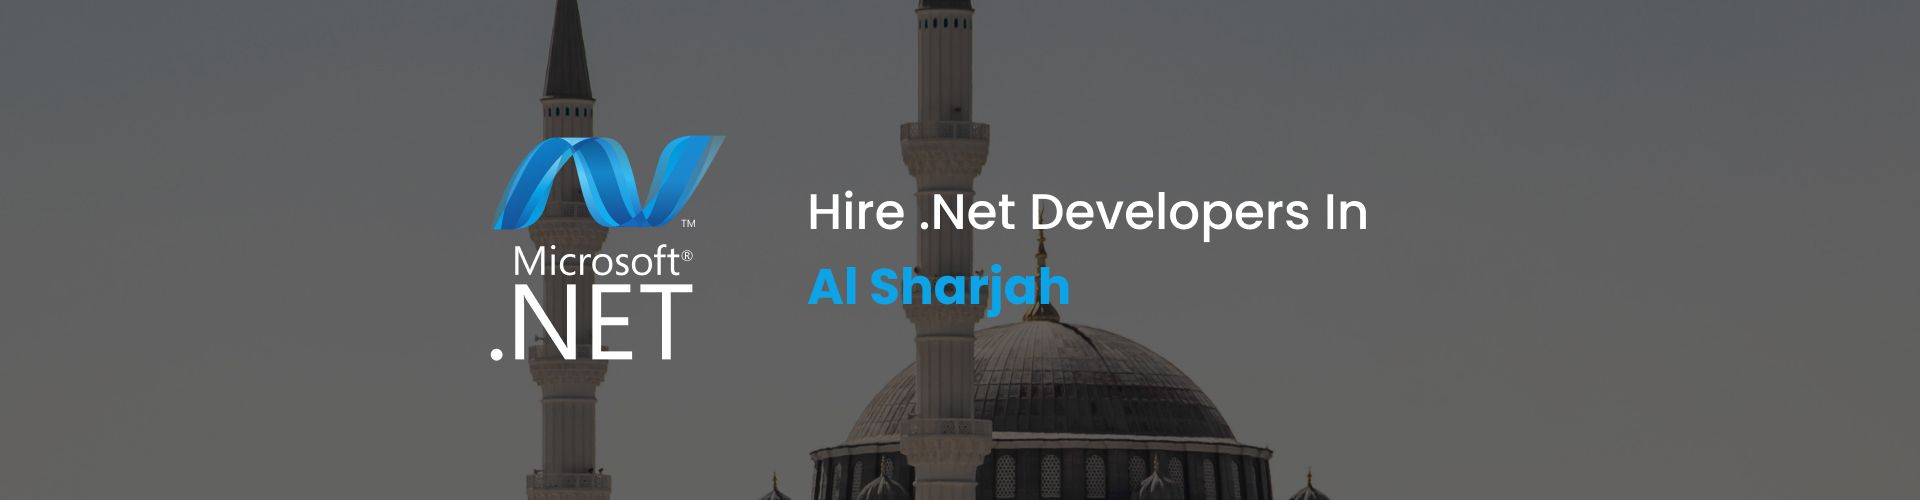 hire .net developers in al sharjah